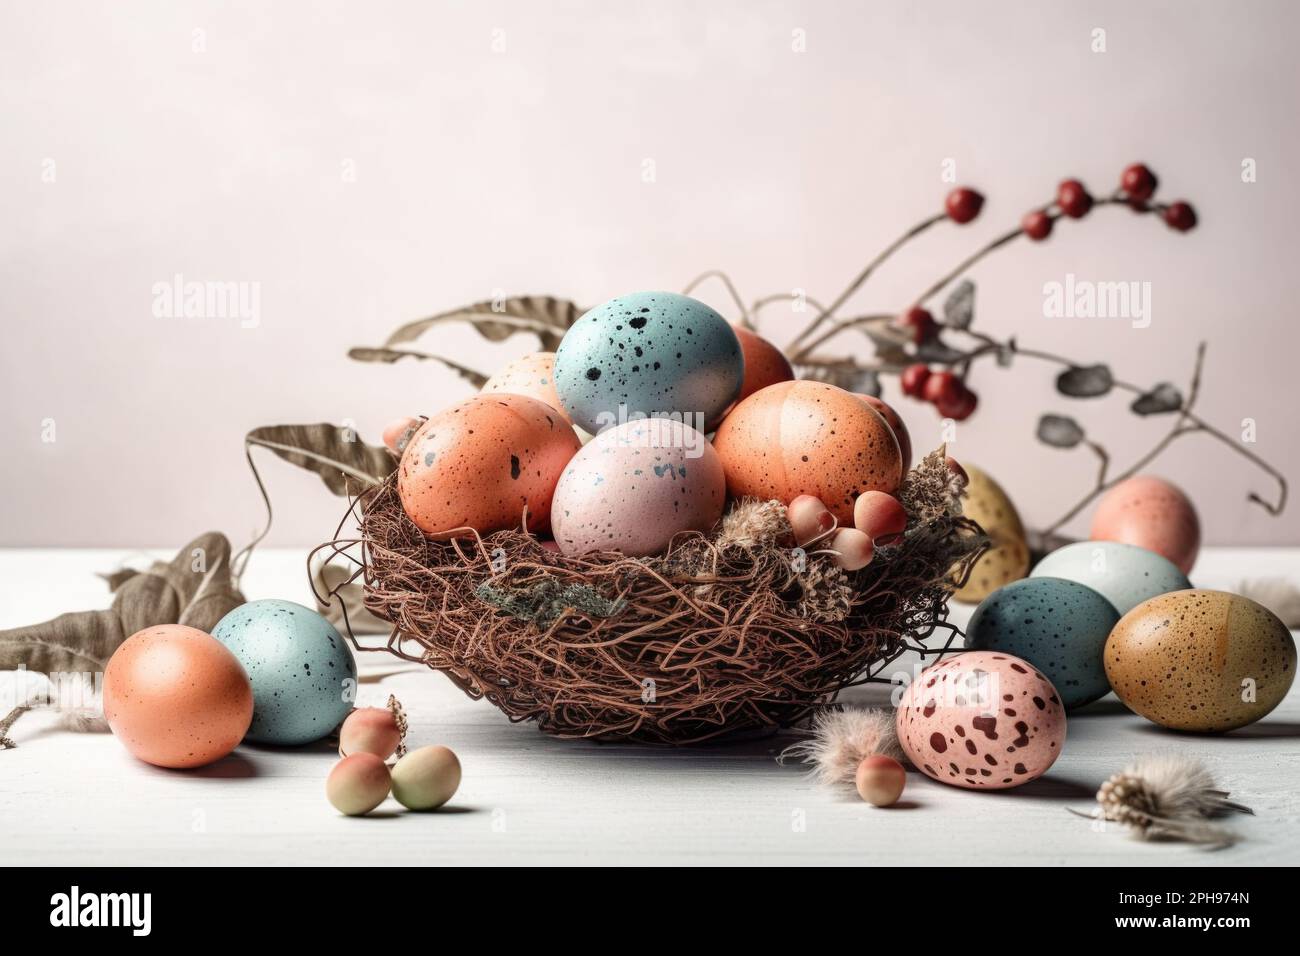 Un élégant étalage de Pâques avec un panier débordant d'œufs de Pâques colorés. Banque D'Images